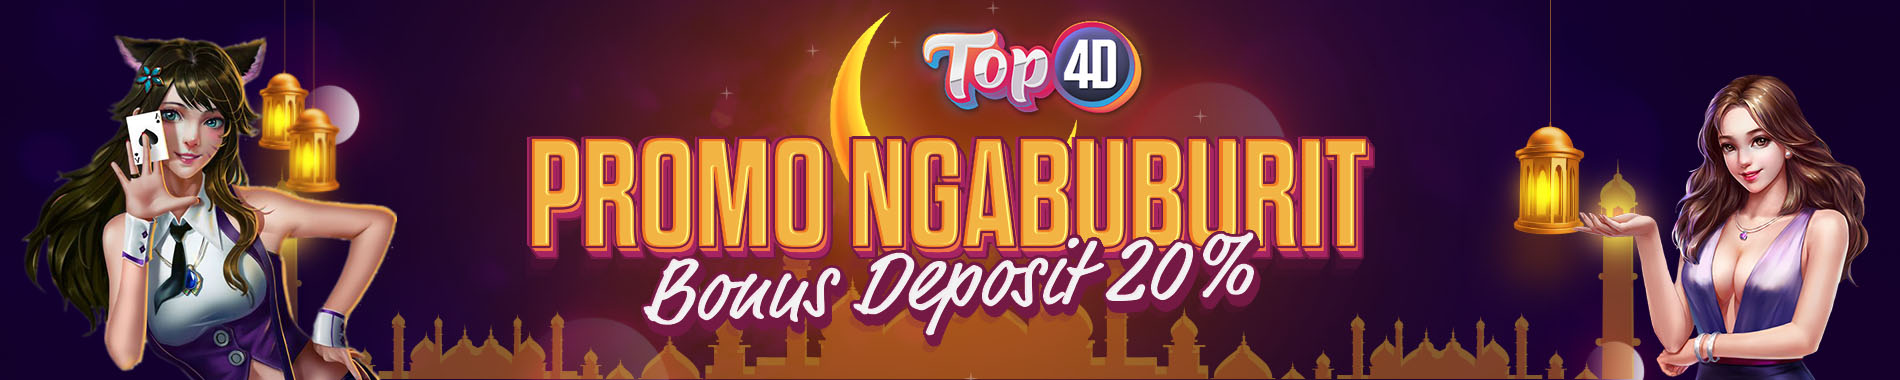 PROMO NGABUBURIT BONUS DEPOSIT 20% TOP4D